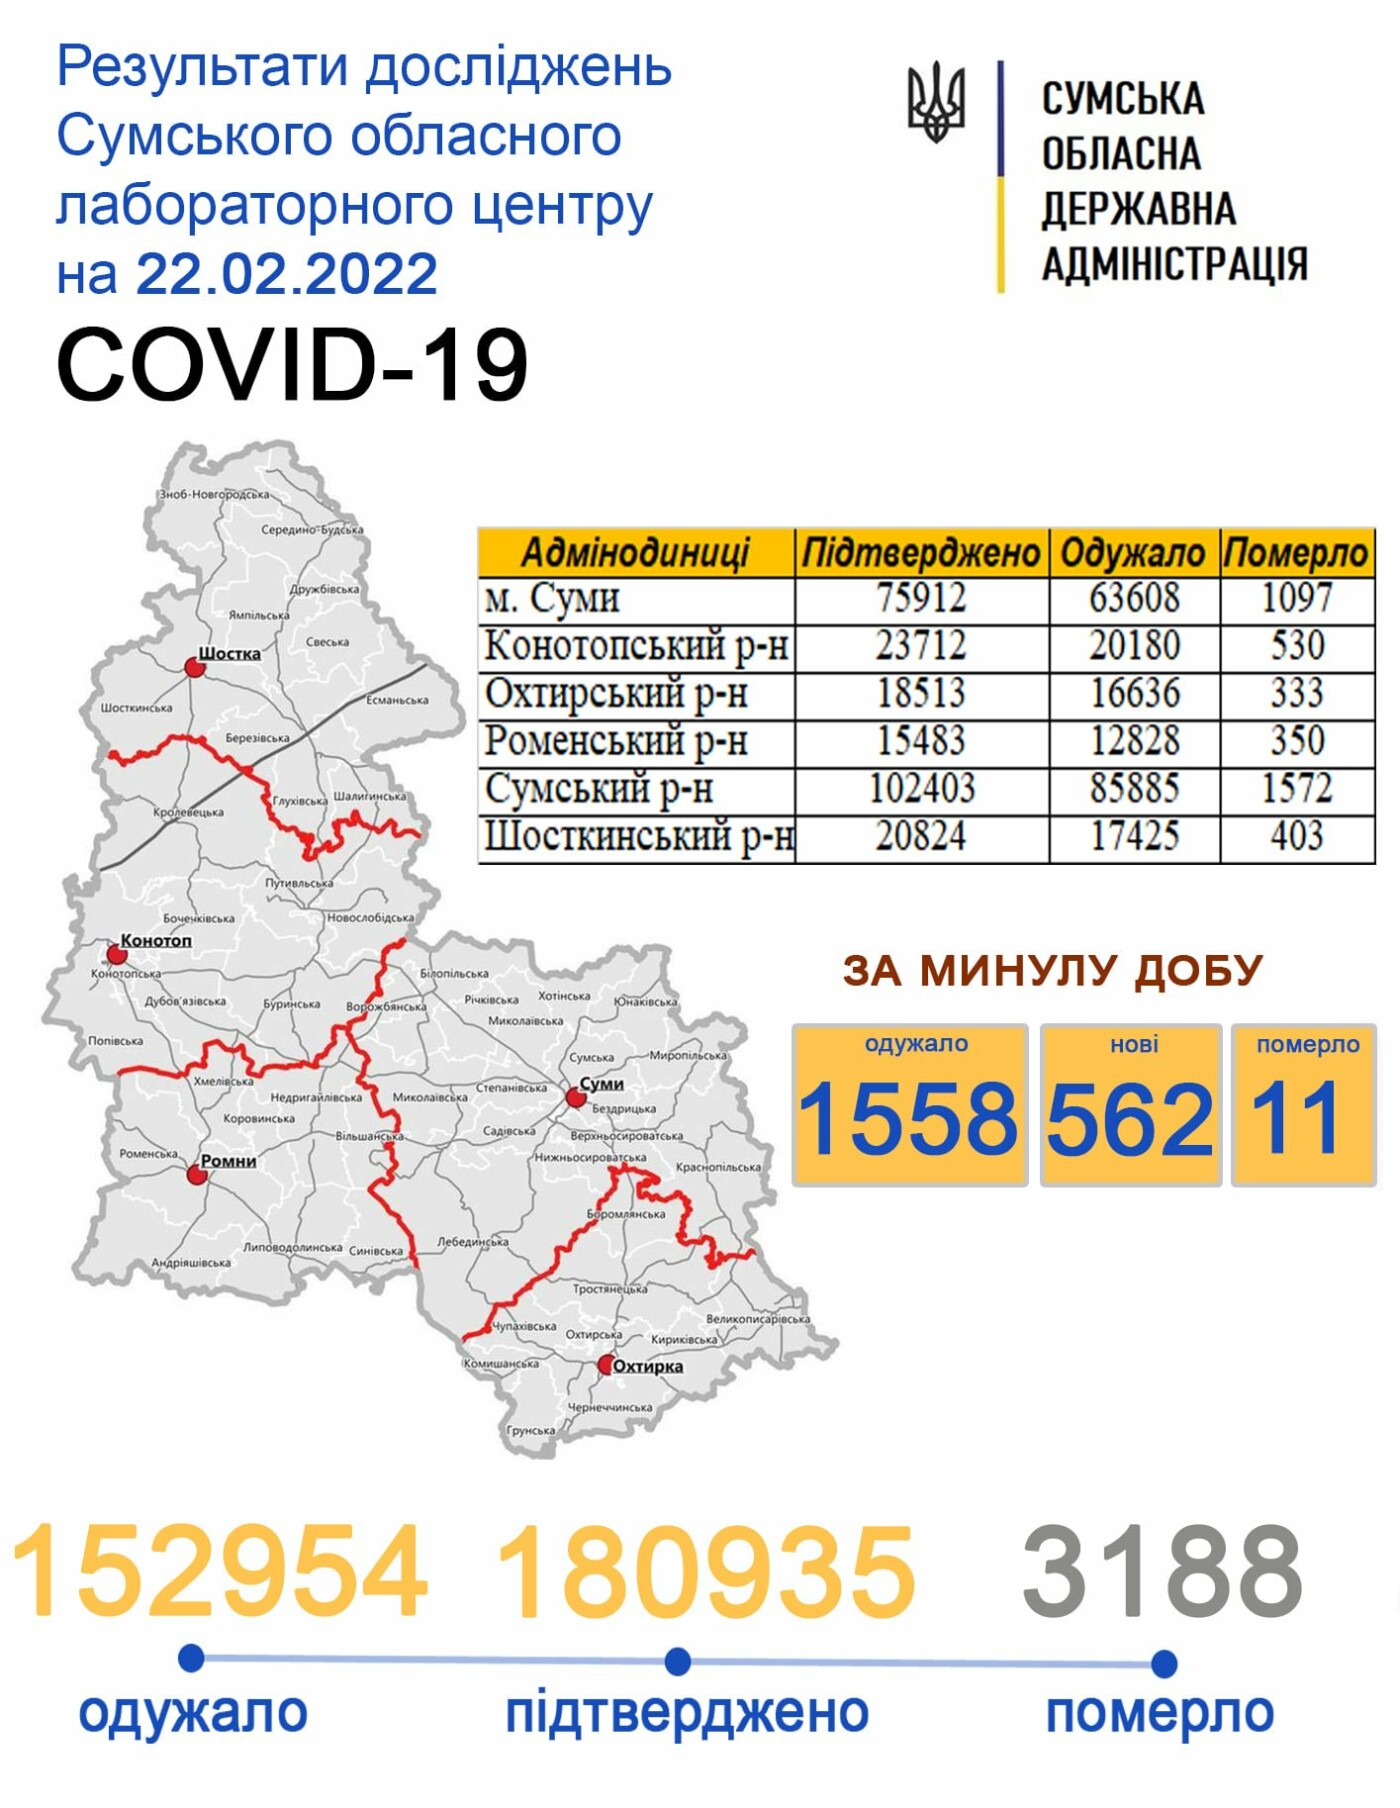    covid-19  562   